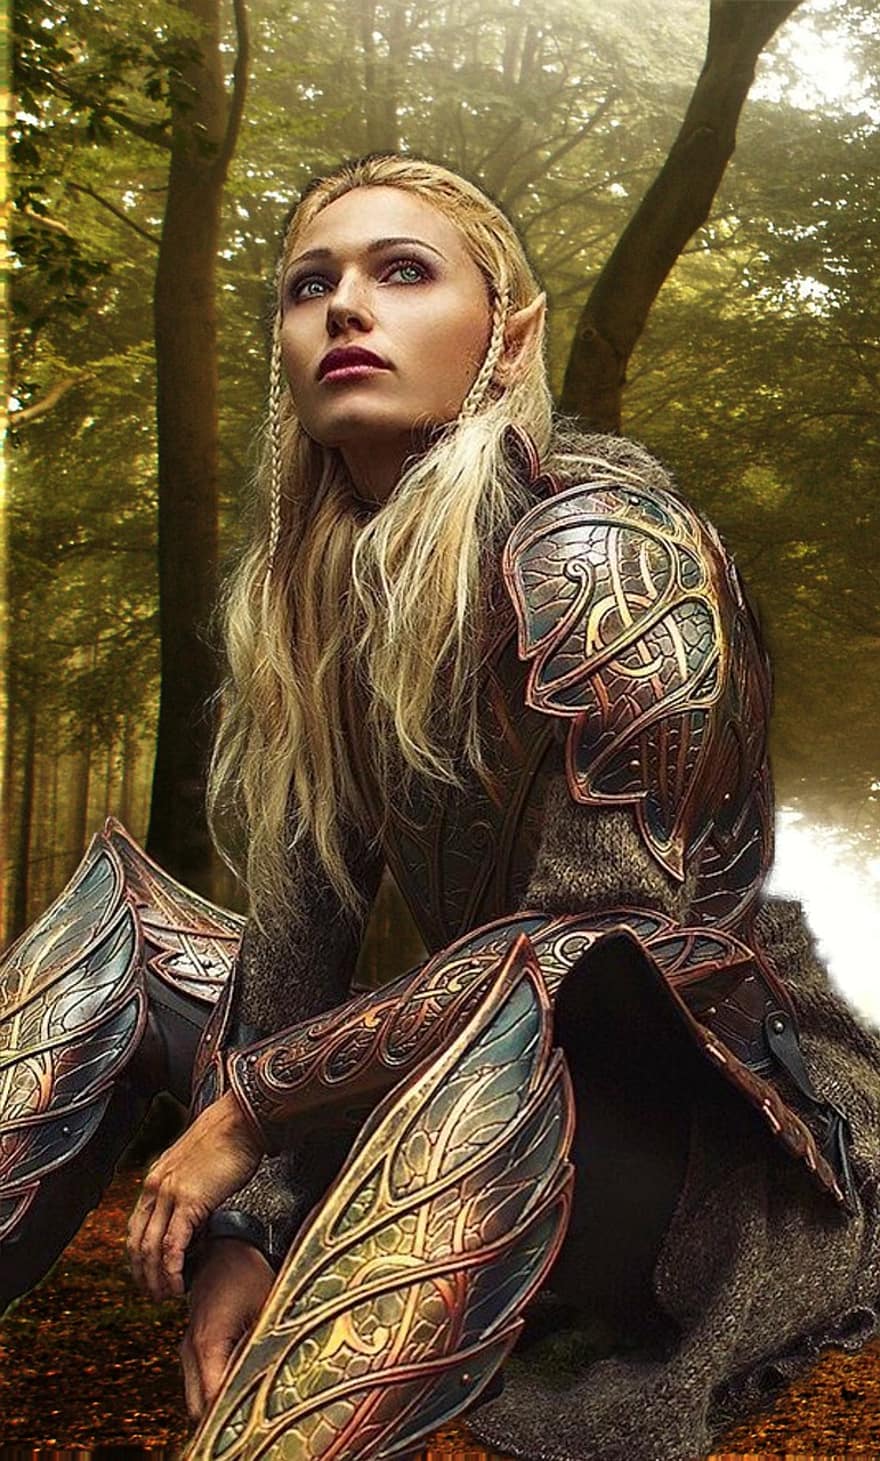 Fantazja, elf, wojownik, portret, kobieta, Las, kobiety, jedna osoba, piękno, dorosły, las